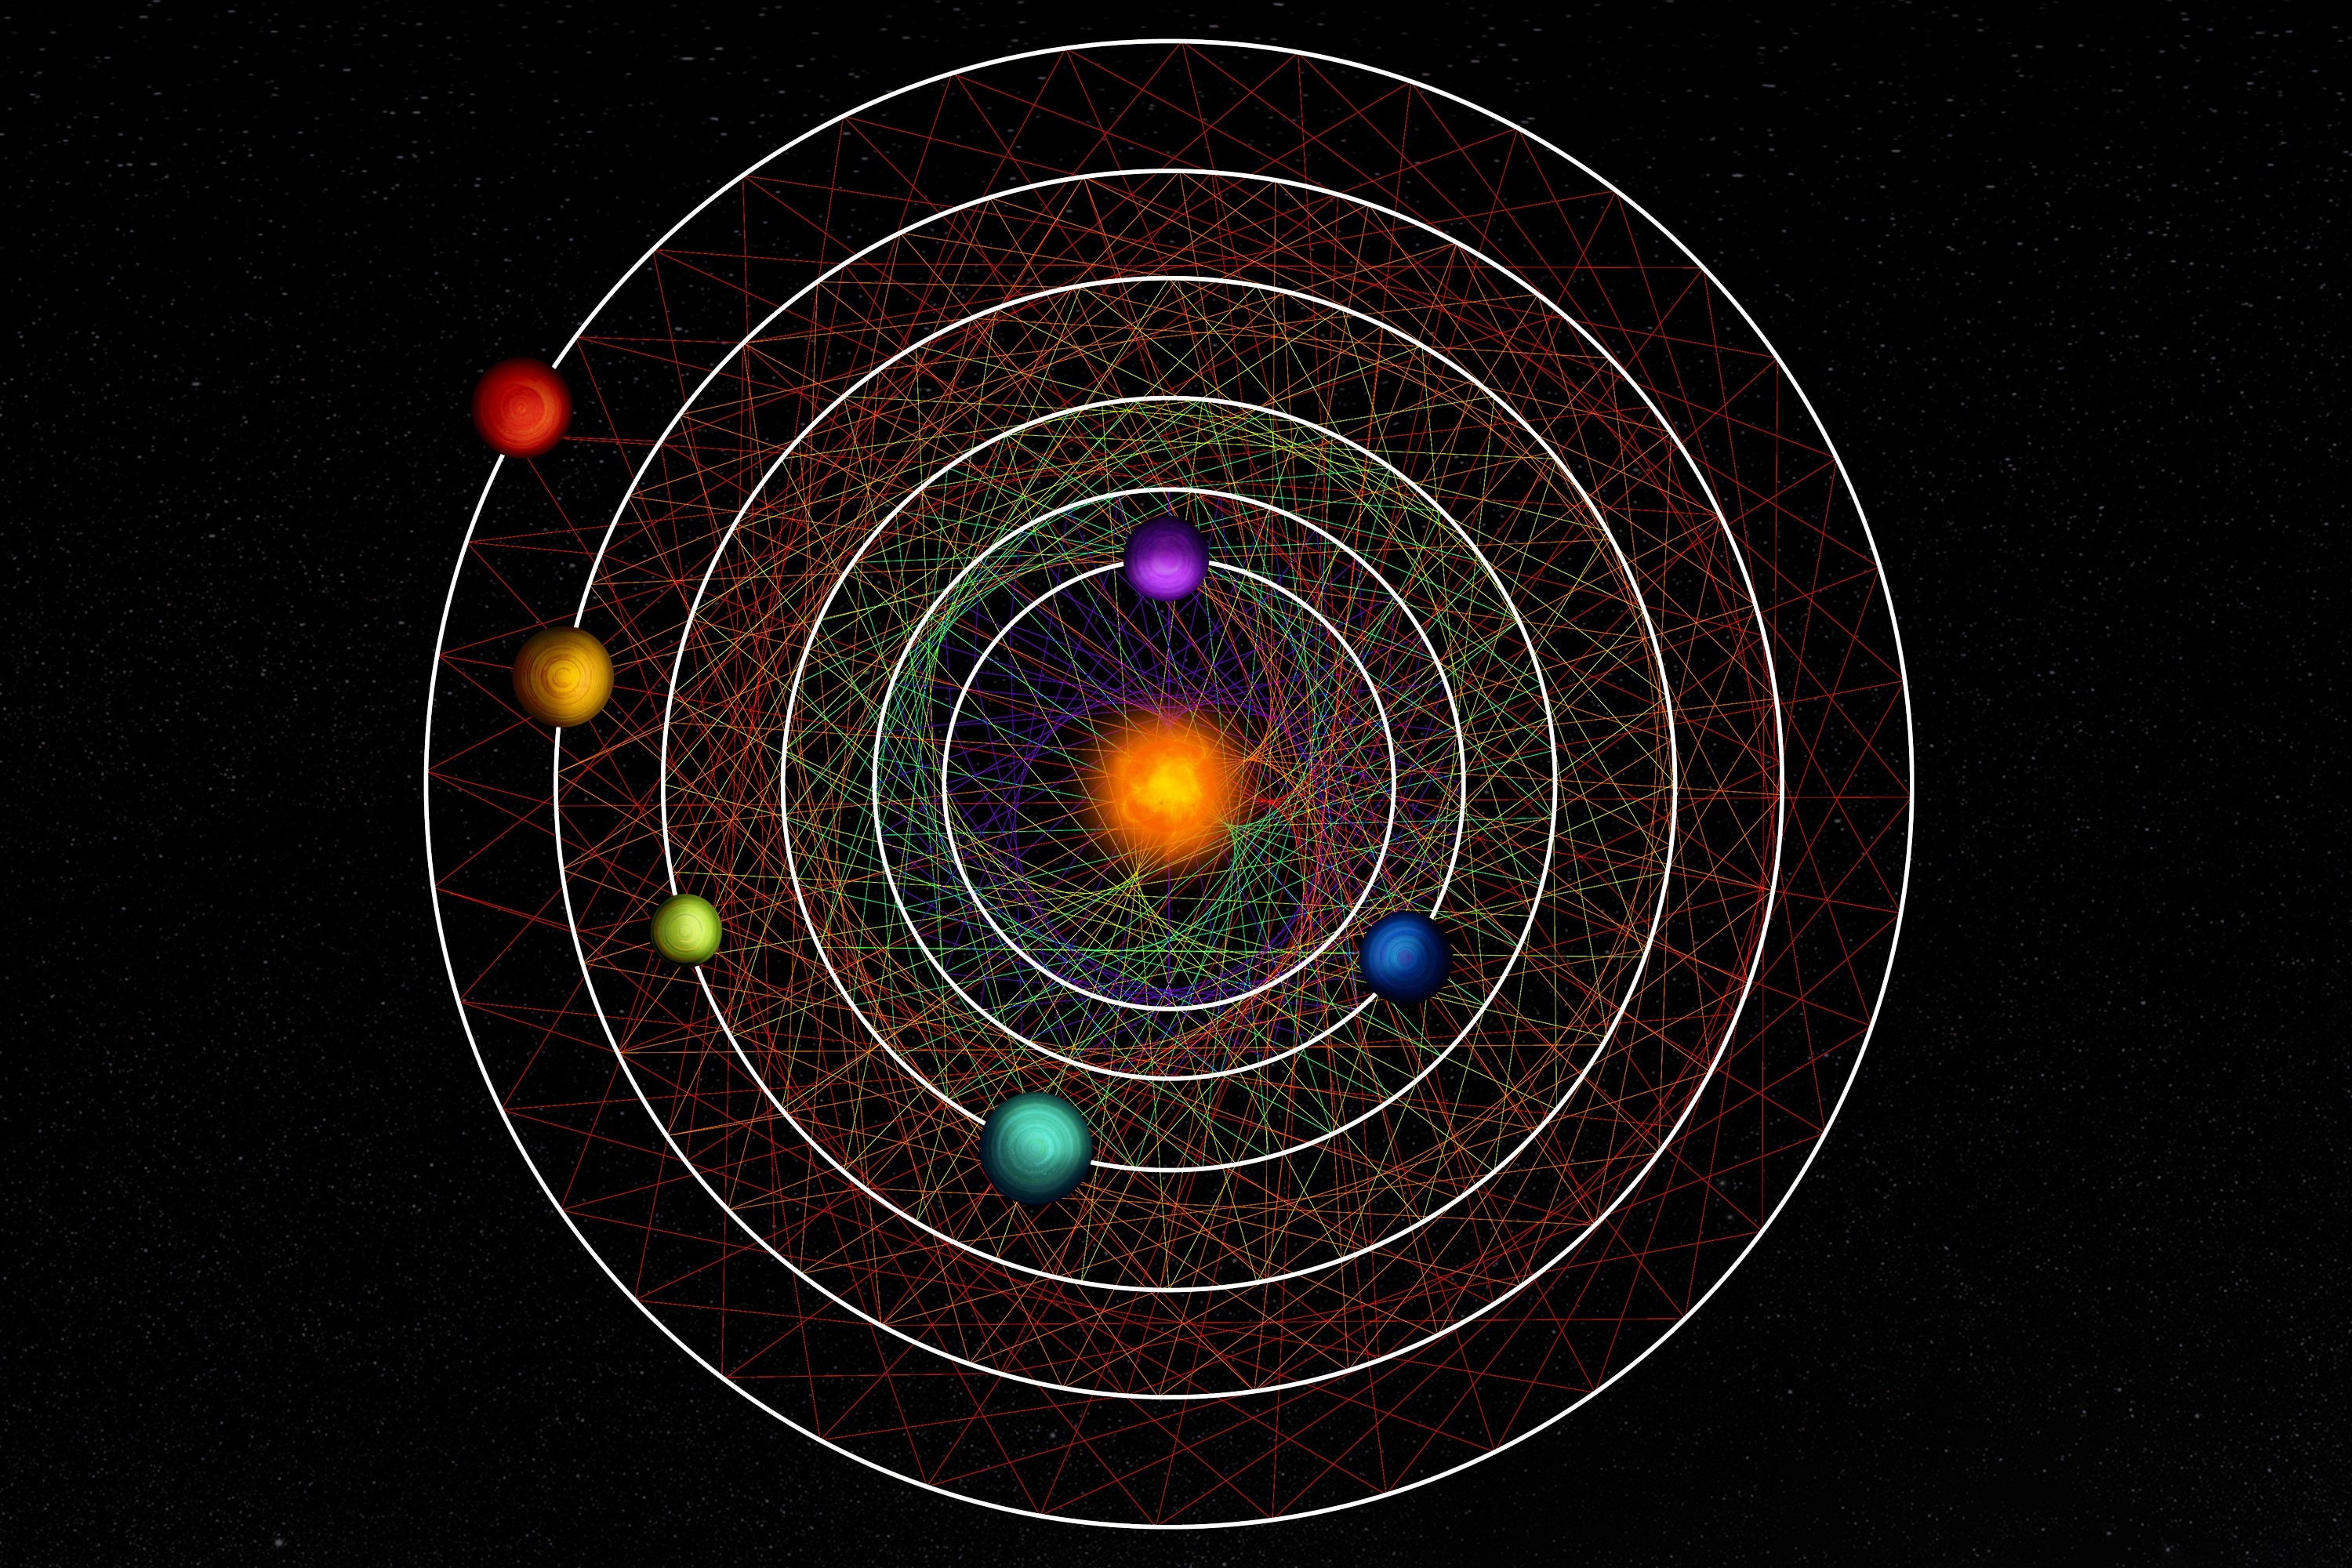 100광년 떨어진 코마 베레니스 자리에 있는 별 HD110067 주위를 정확한 공전 주기를 가진 6개의 행성을 발견했다.  © CC BY-NC-SA 4.0, Thibaut Roger/NCCR PlanetS